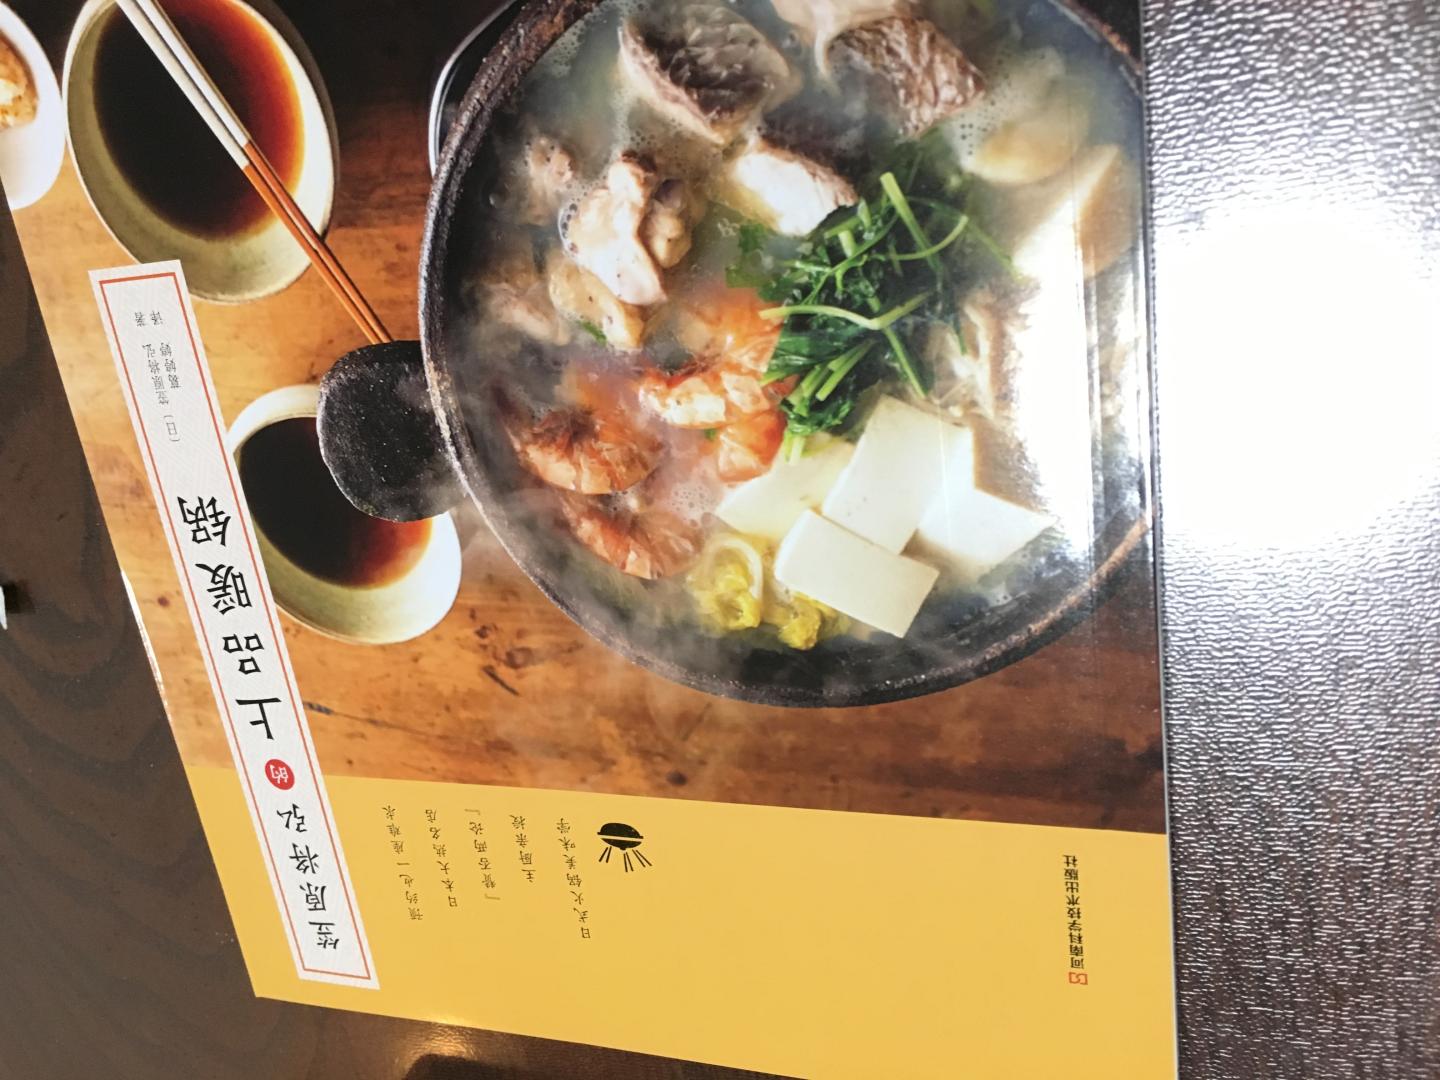 日本人对汤的追求已经超出了中国人理解的一锅汤。光翻看里头一张张照片都让人垂涎欲滴，非常适合秋冬季节犒赏舌头和胃。里头的很多recipe可能需要一些日本独有的食材和调味，这本书只是帮你打开一扇门，还有好多食材需要在继续败败败，哈哈！上路吧！